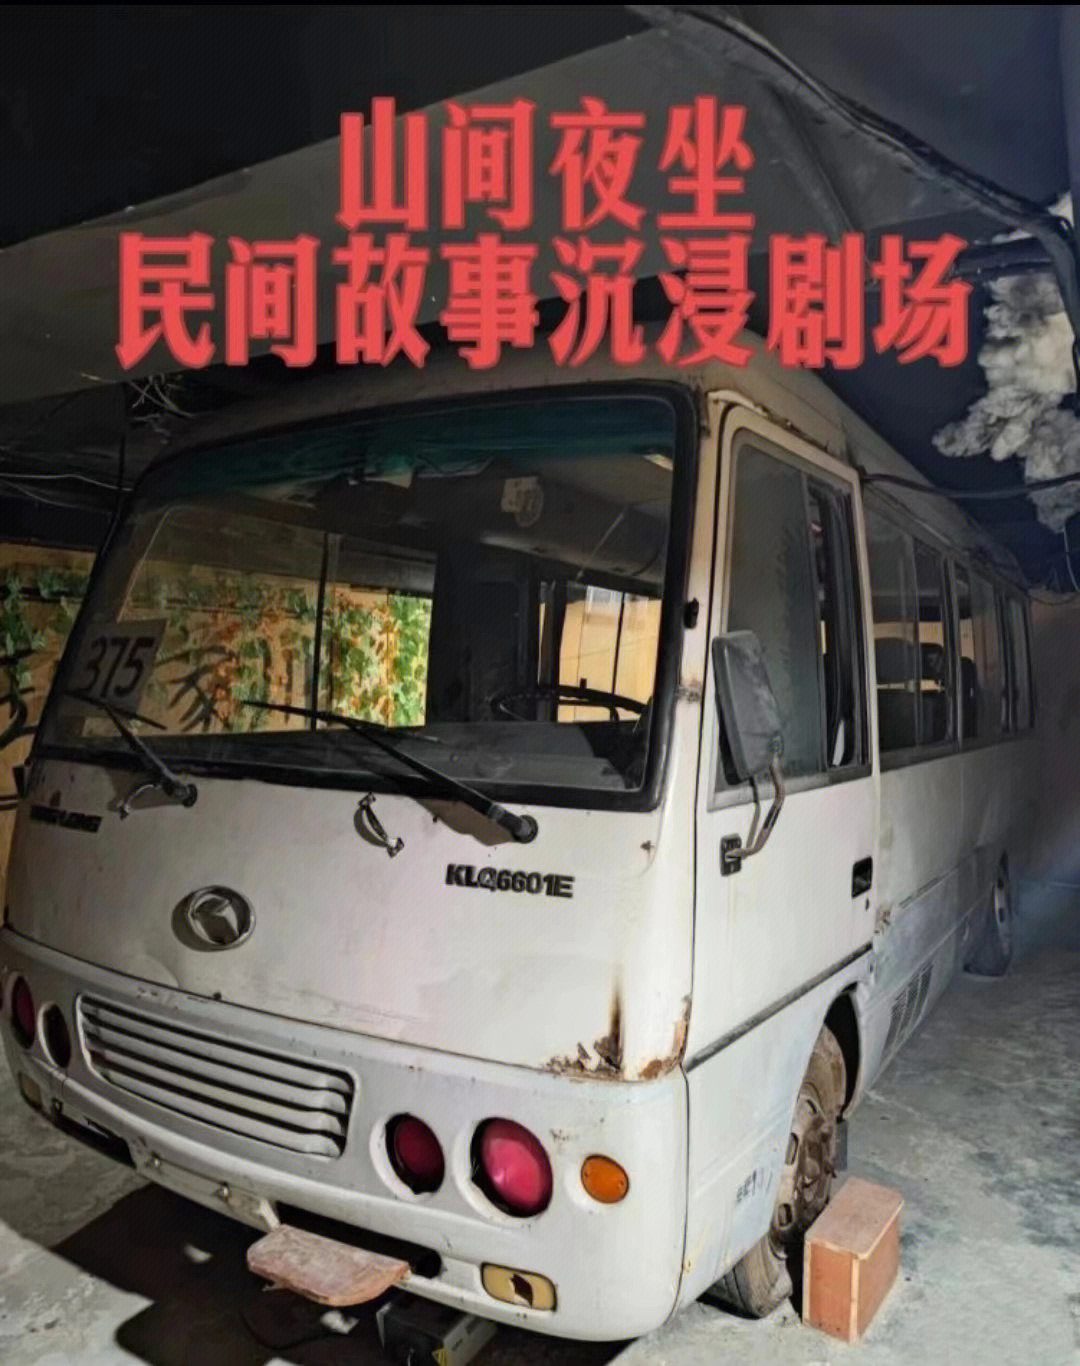 北京民间灵异事件375路末班车改编的密室